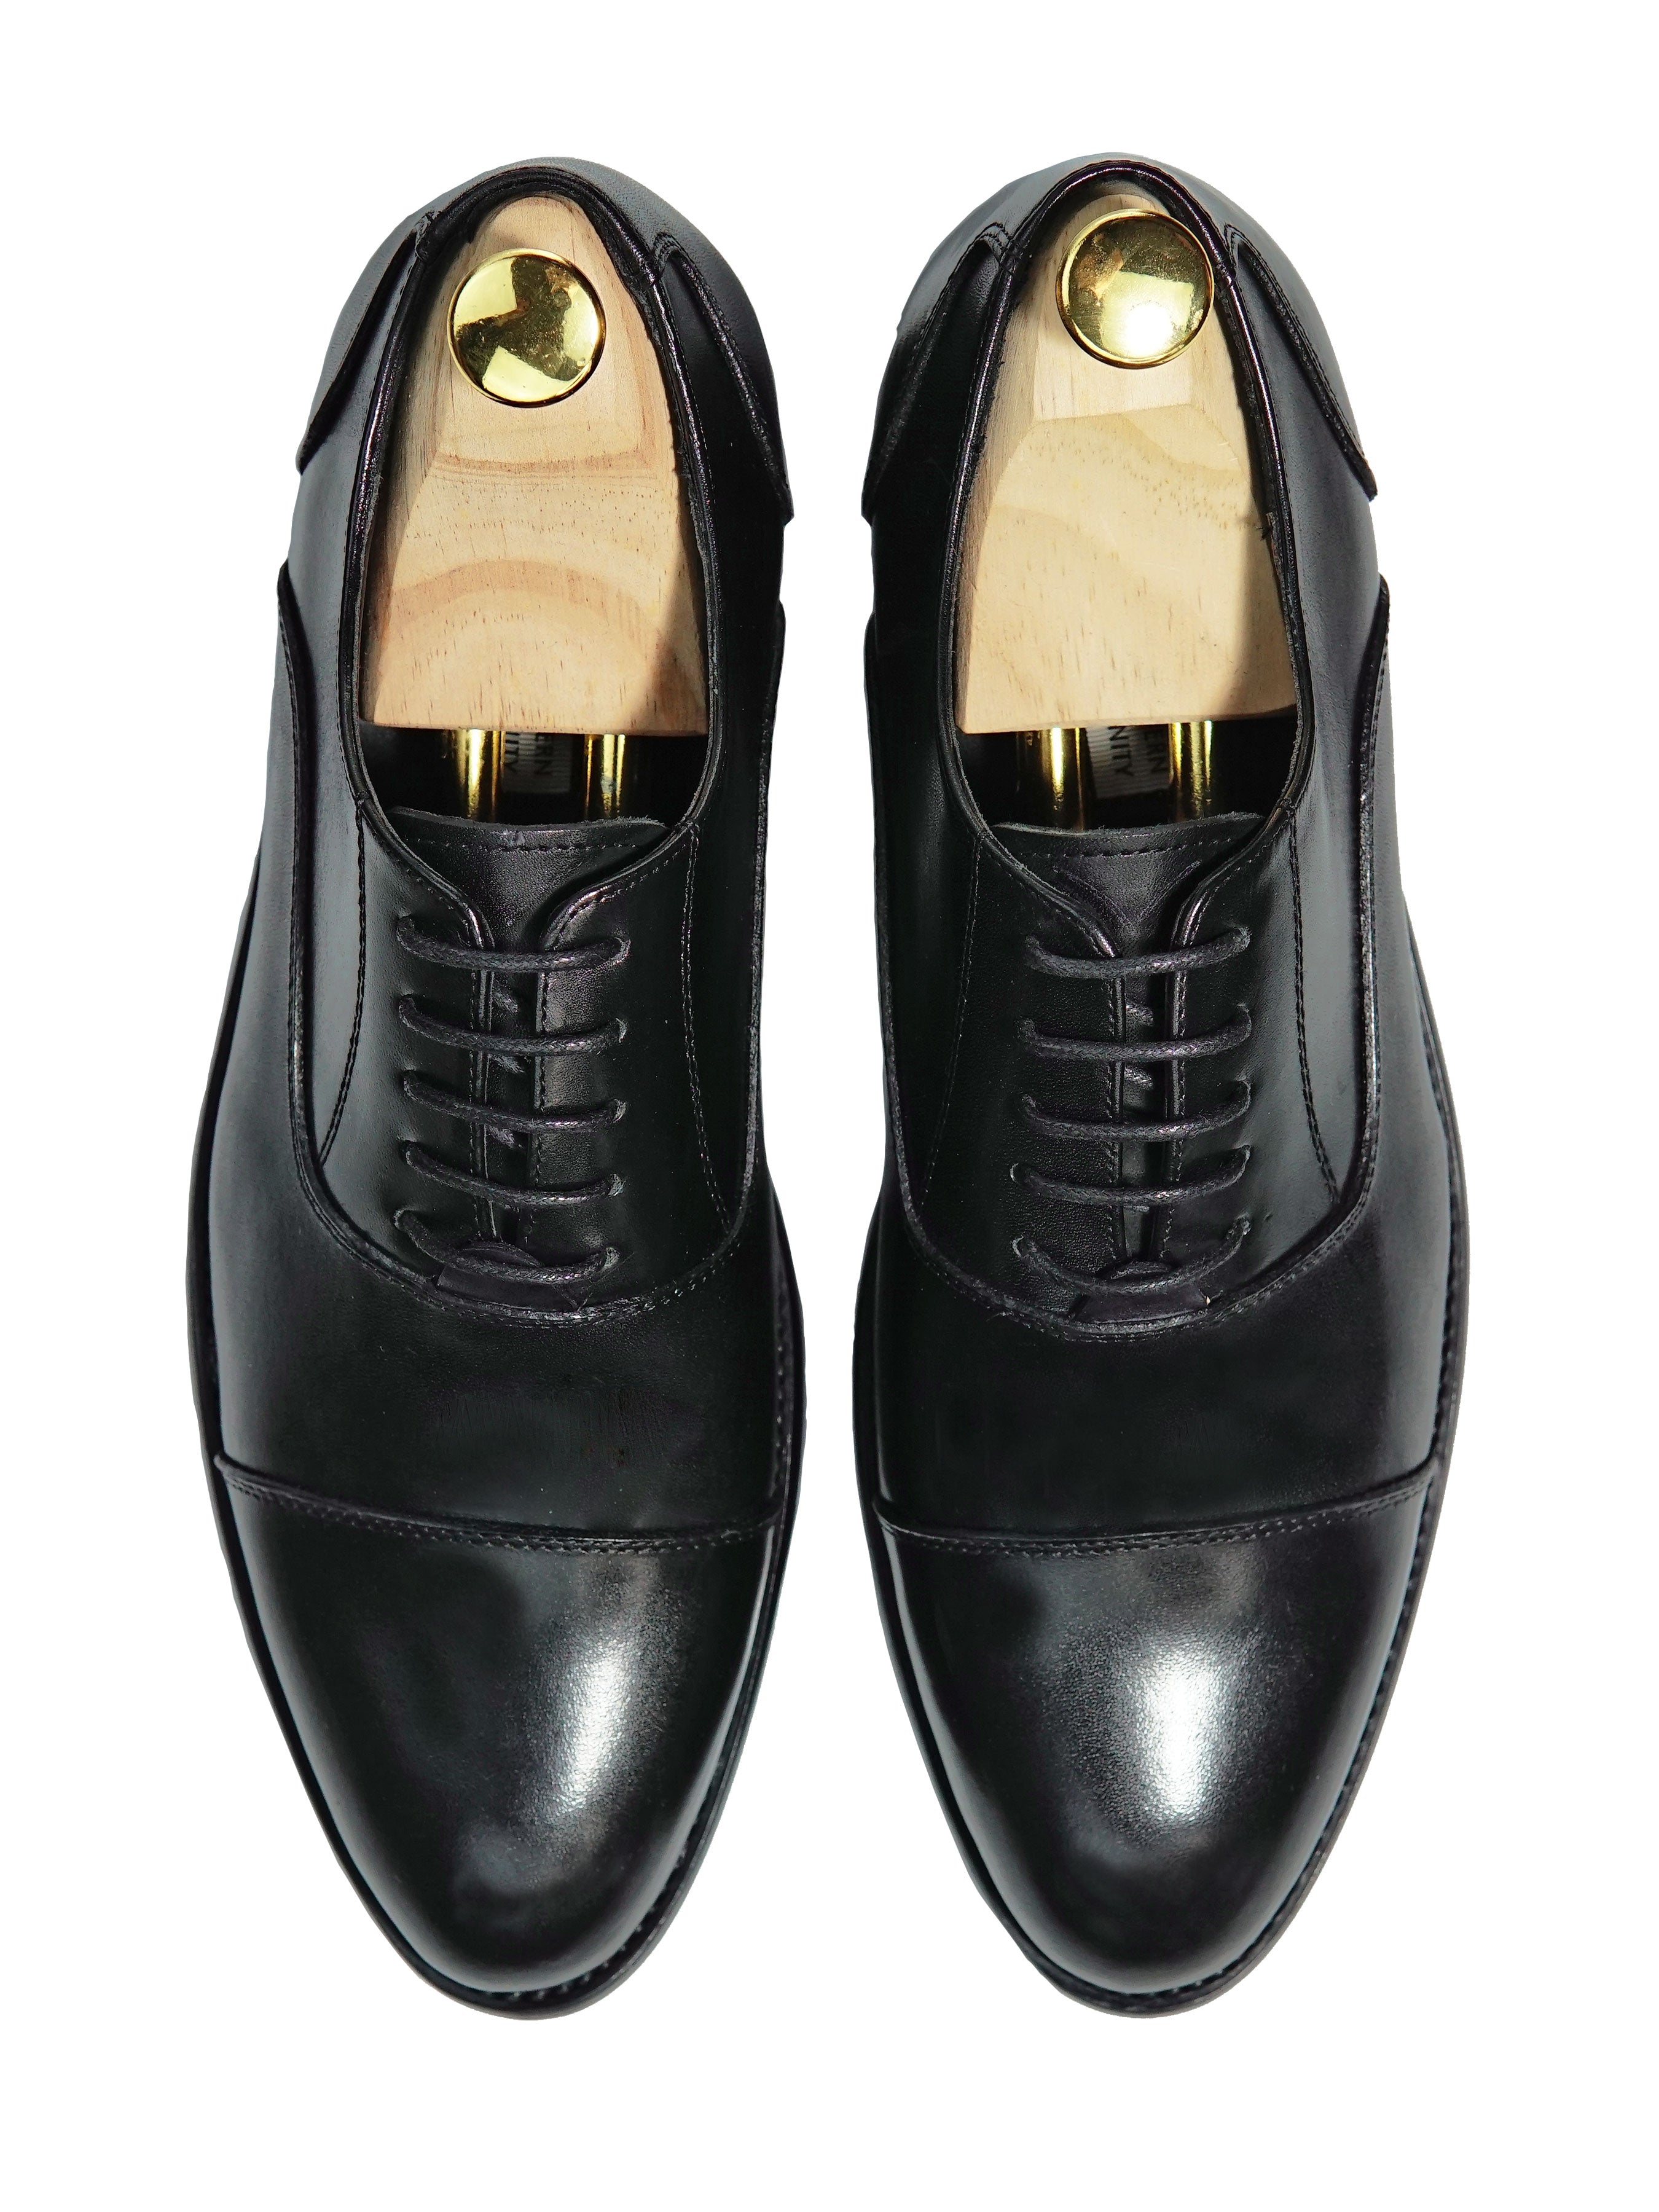 Oxford Cap Toe - Black Lace Up - Zeve Shoes